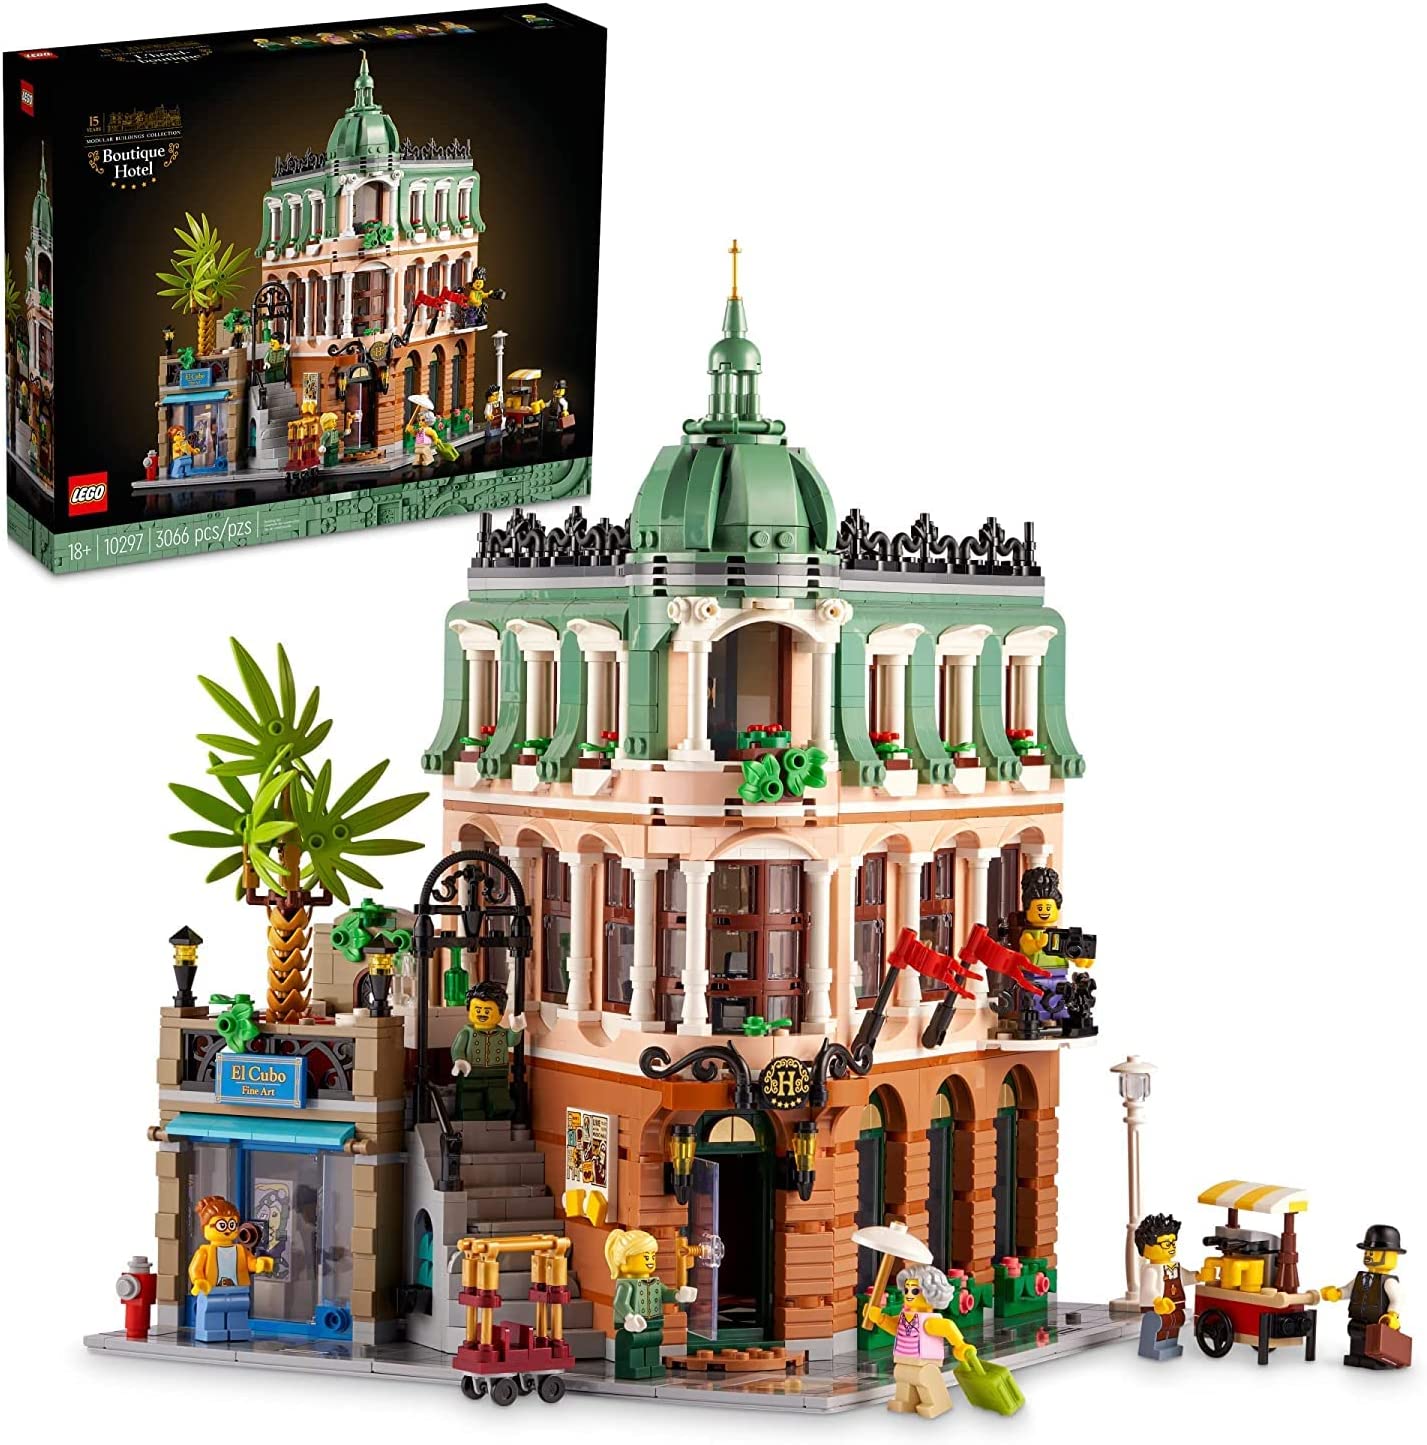 LEGO Hotel Boutique 3066 piezas